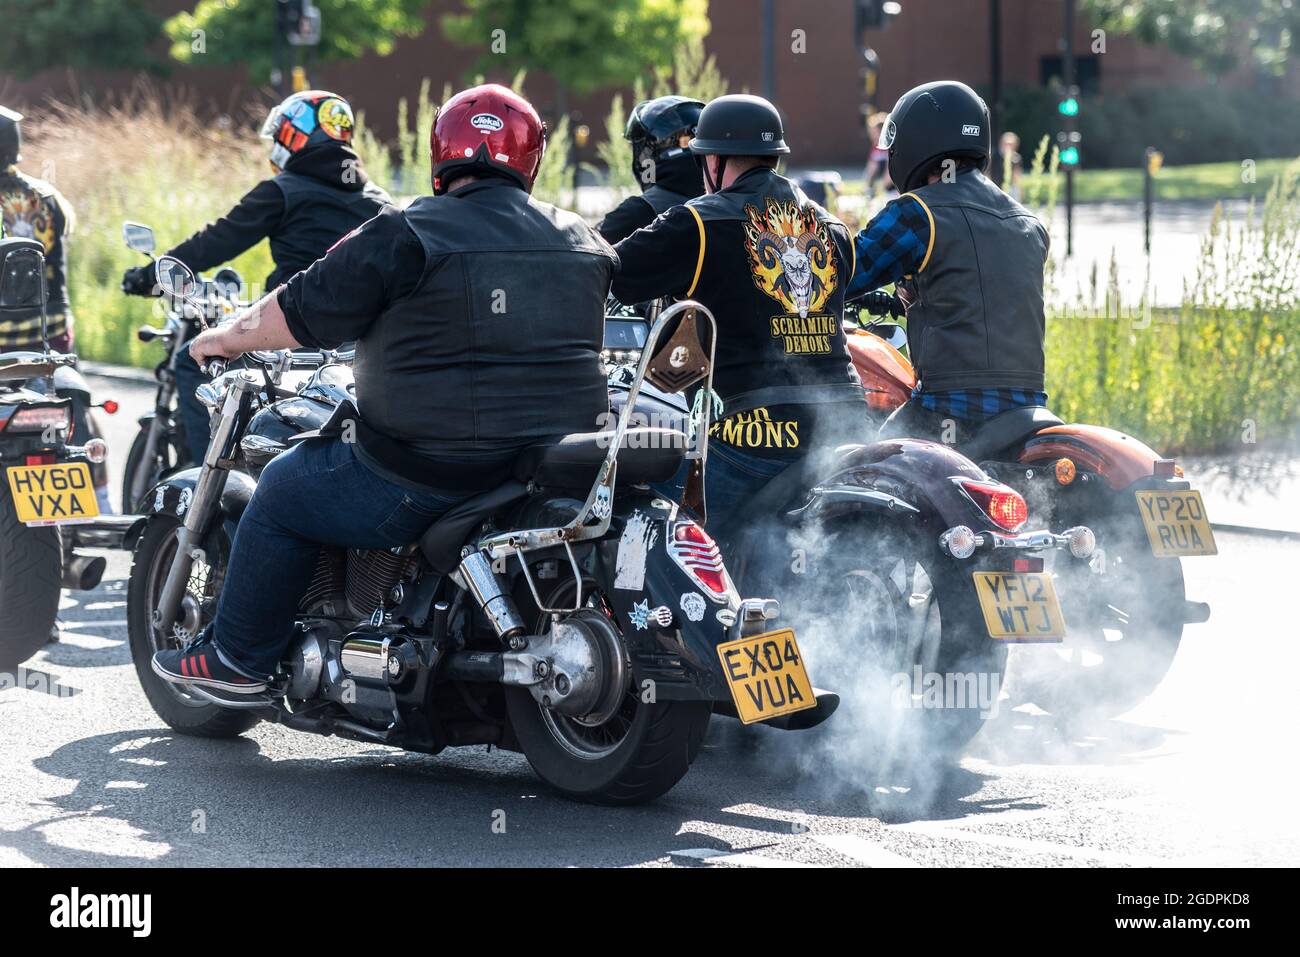 Les motards du club de motos hurlant Demons arrivant à Southend on Sea,  Essex, Royaume-Uni. Motocycliste brûlant du caoutchouc, faisant tourner la  roue arrière et fumée Photo Stock - Alamy